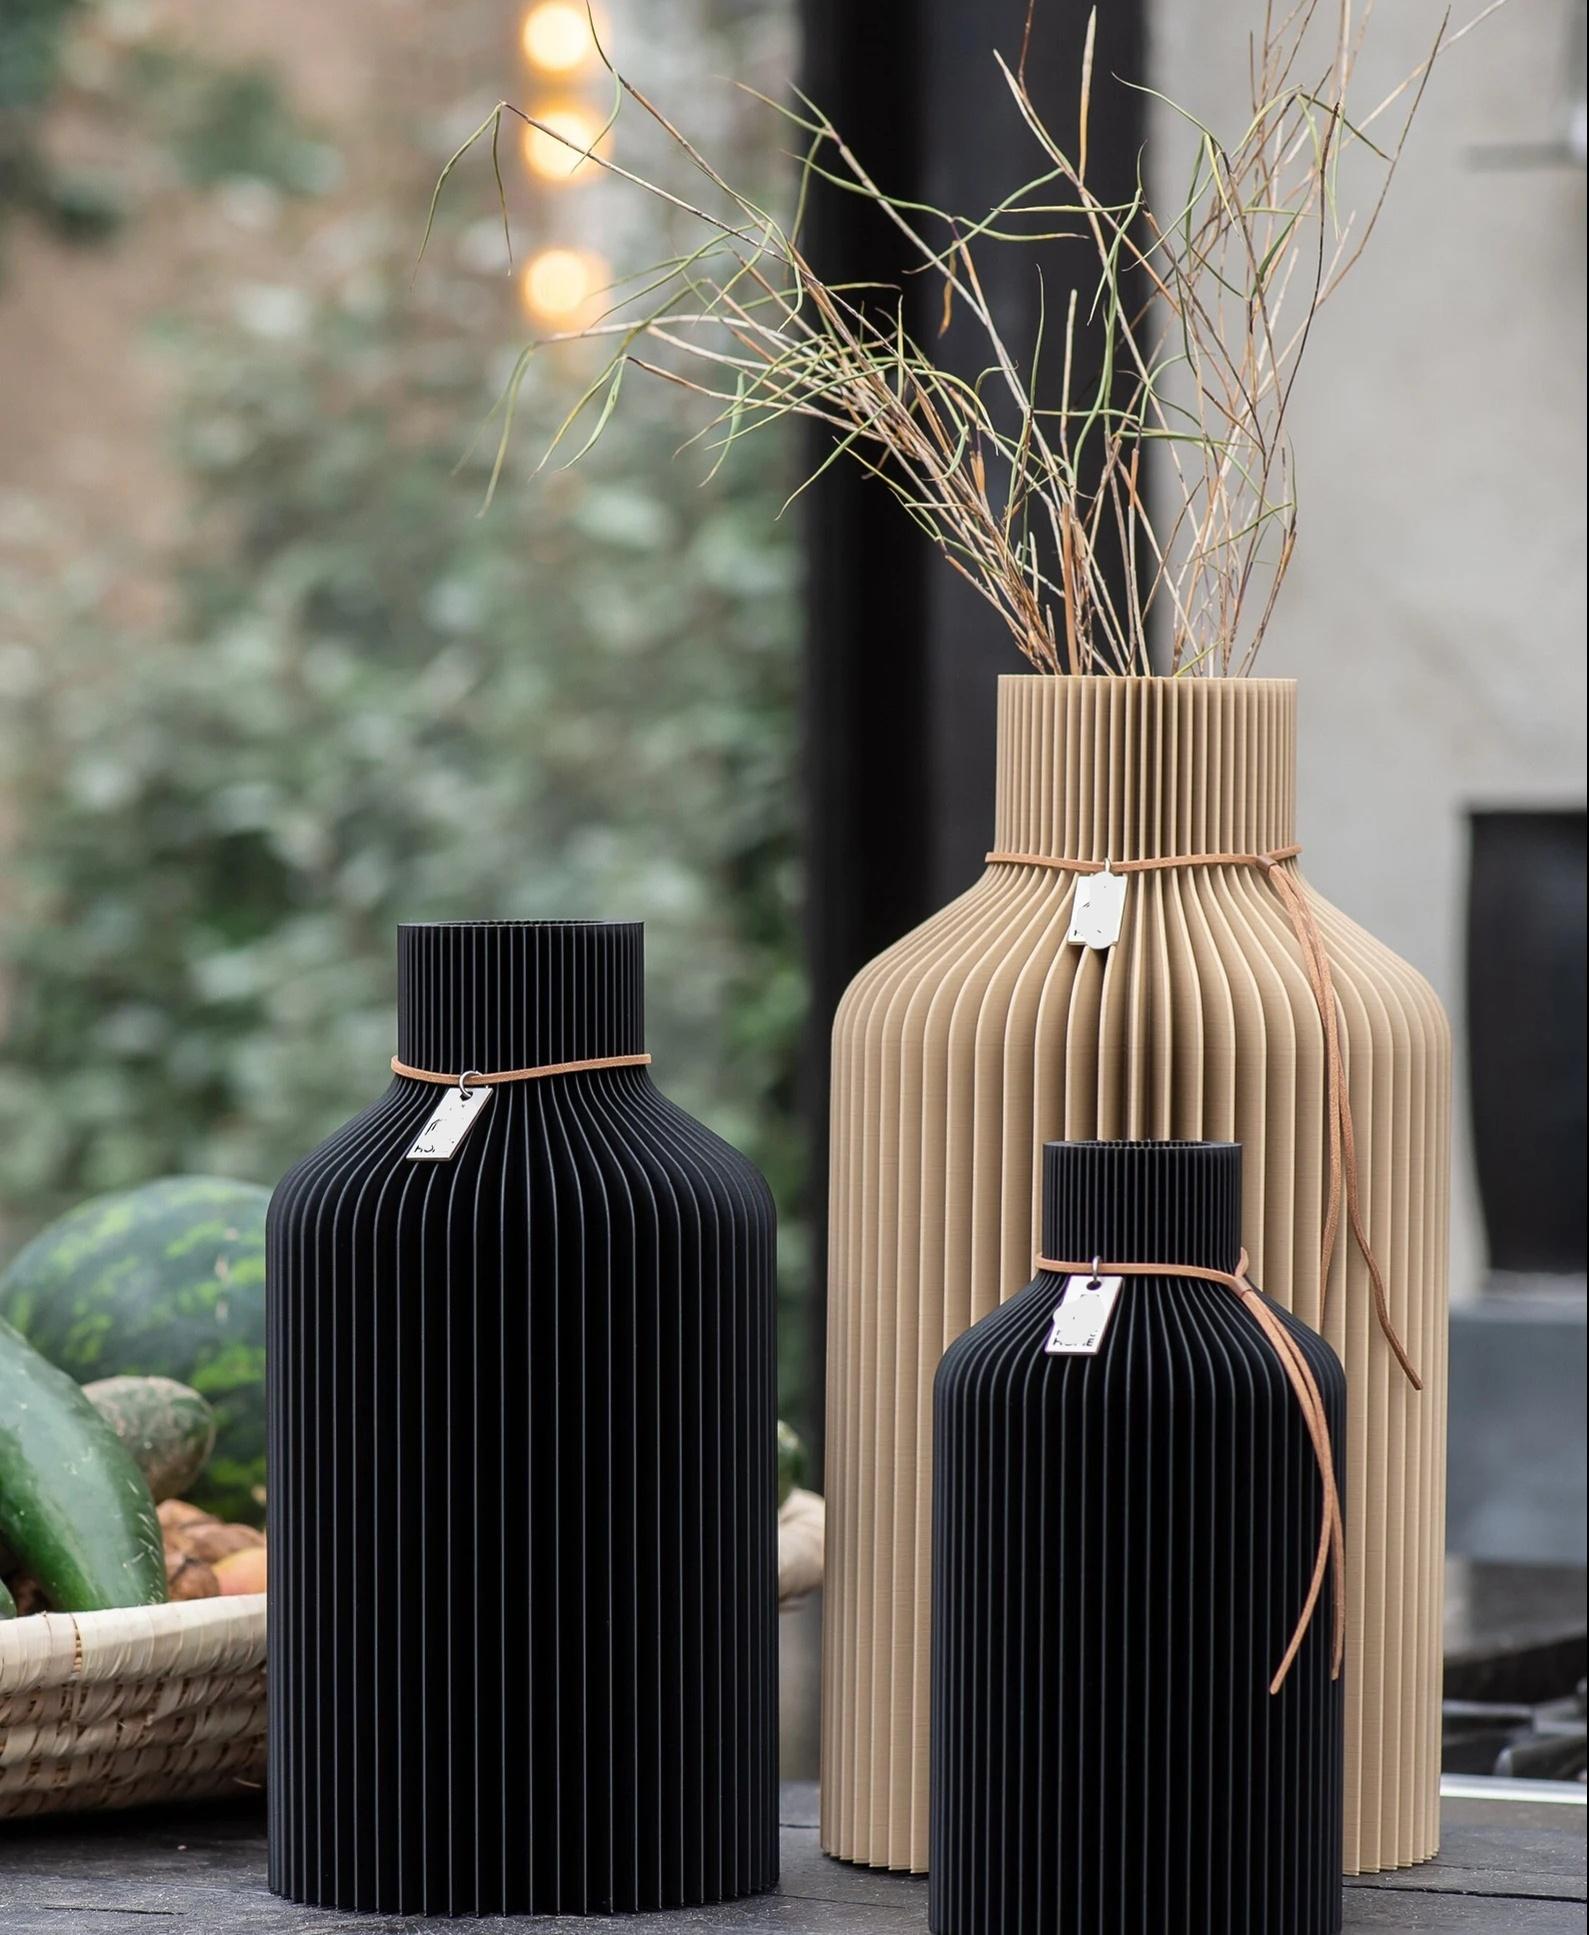 The Bottle - A Botany Chic Vase 3d model